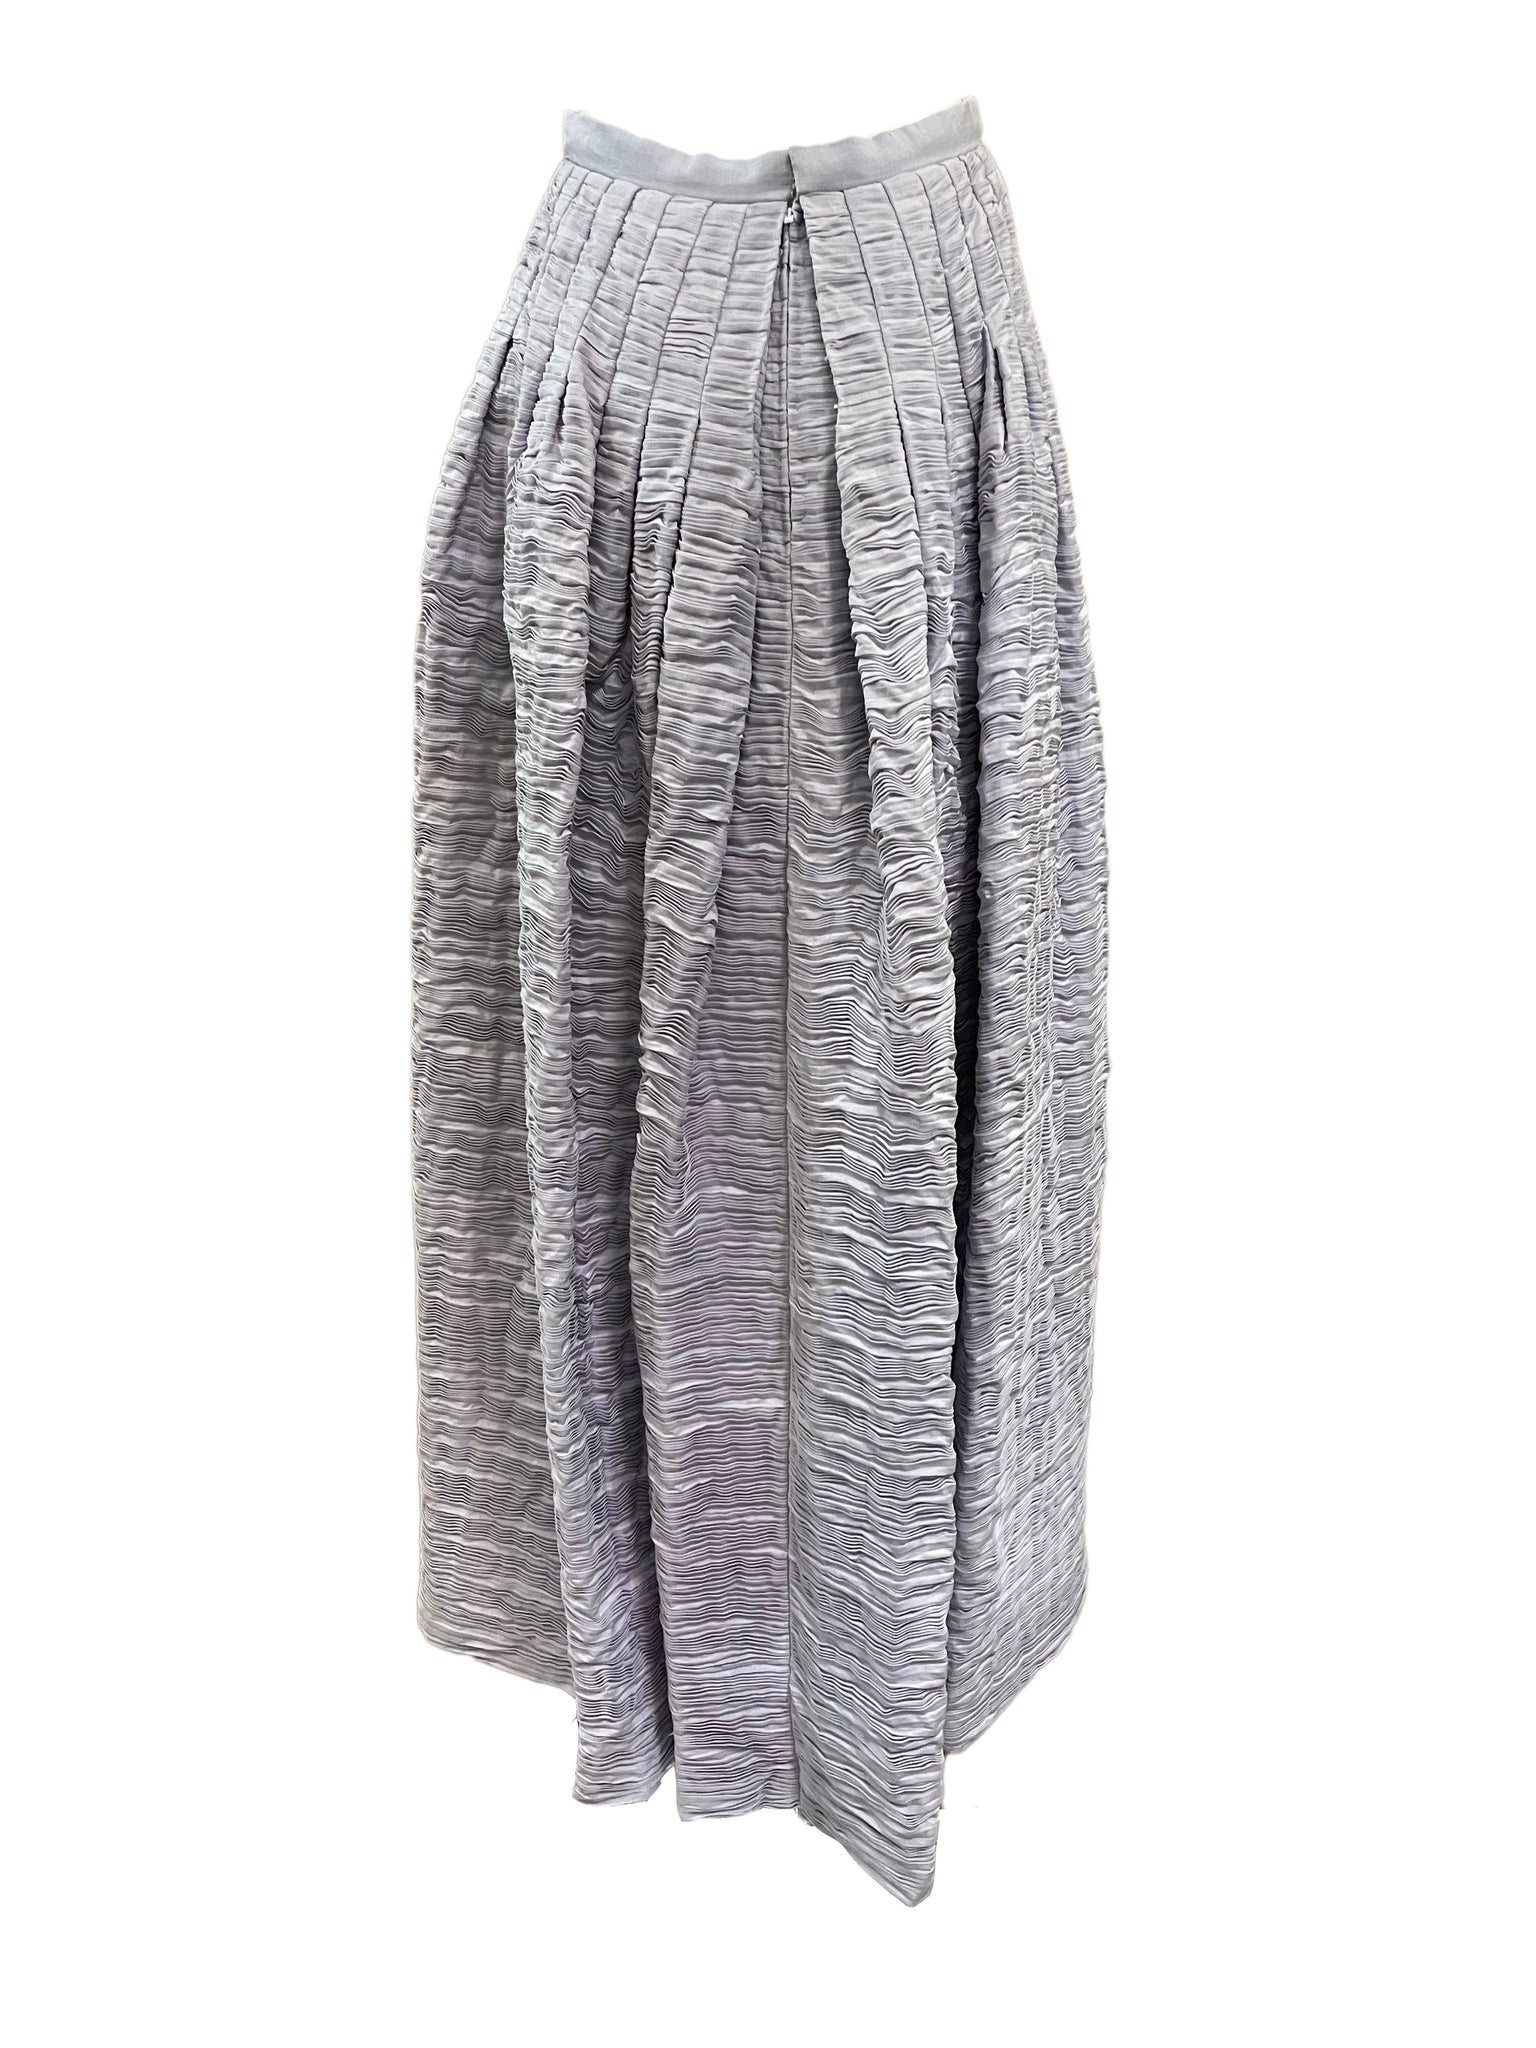 Sybil Connolly 60s Lavender  Full Length Skirt BACK 2 of 5